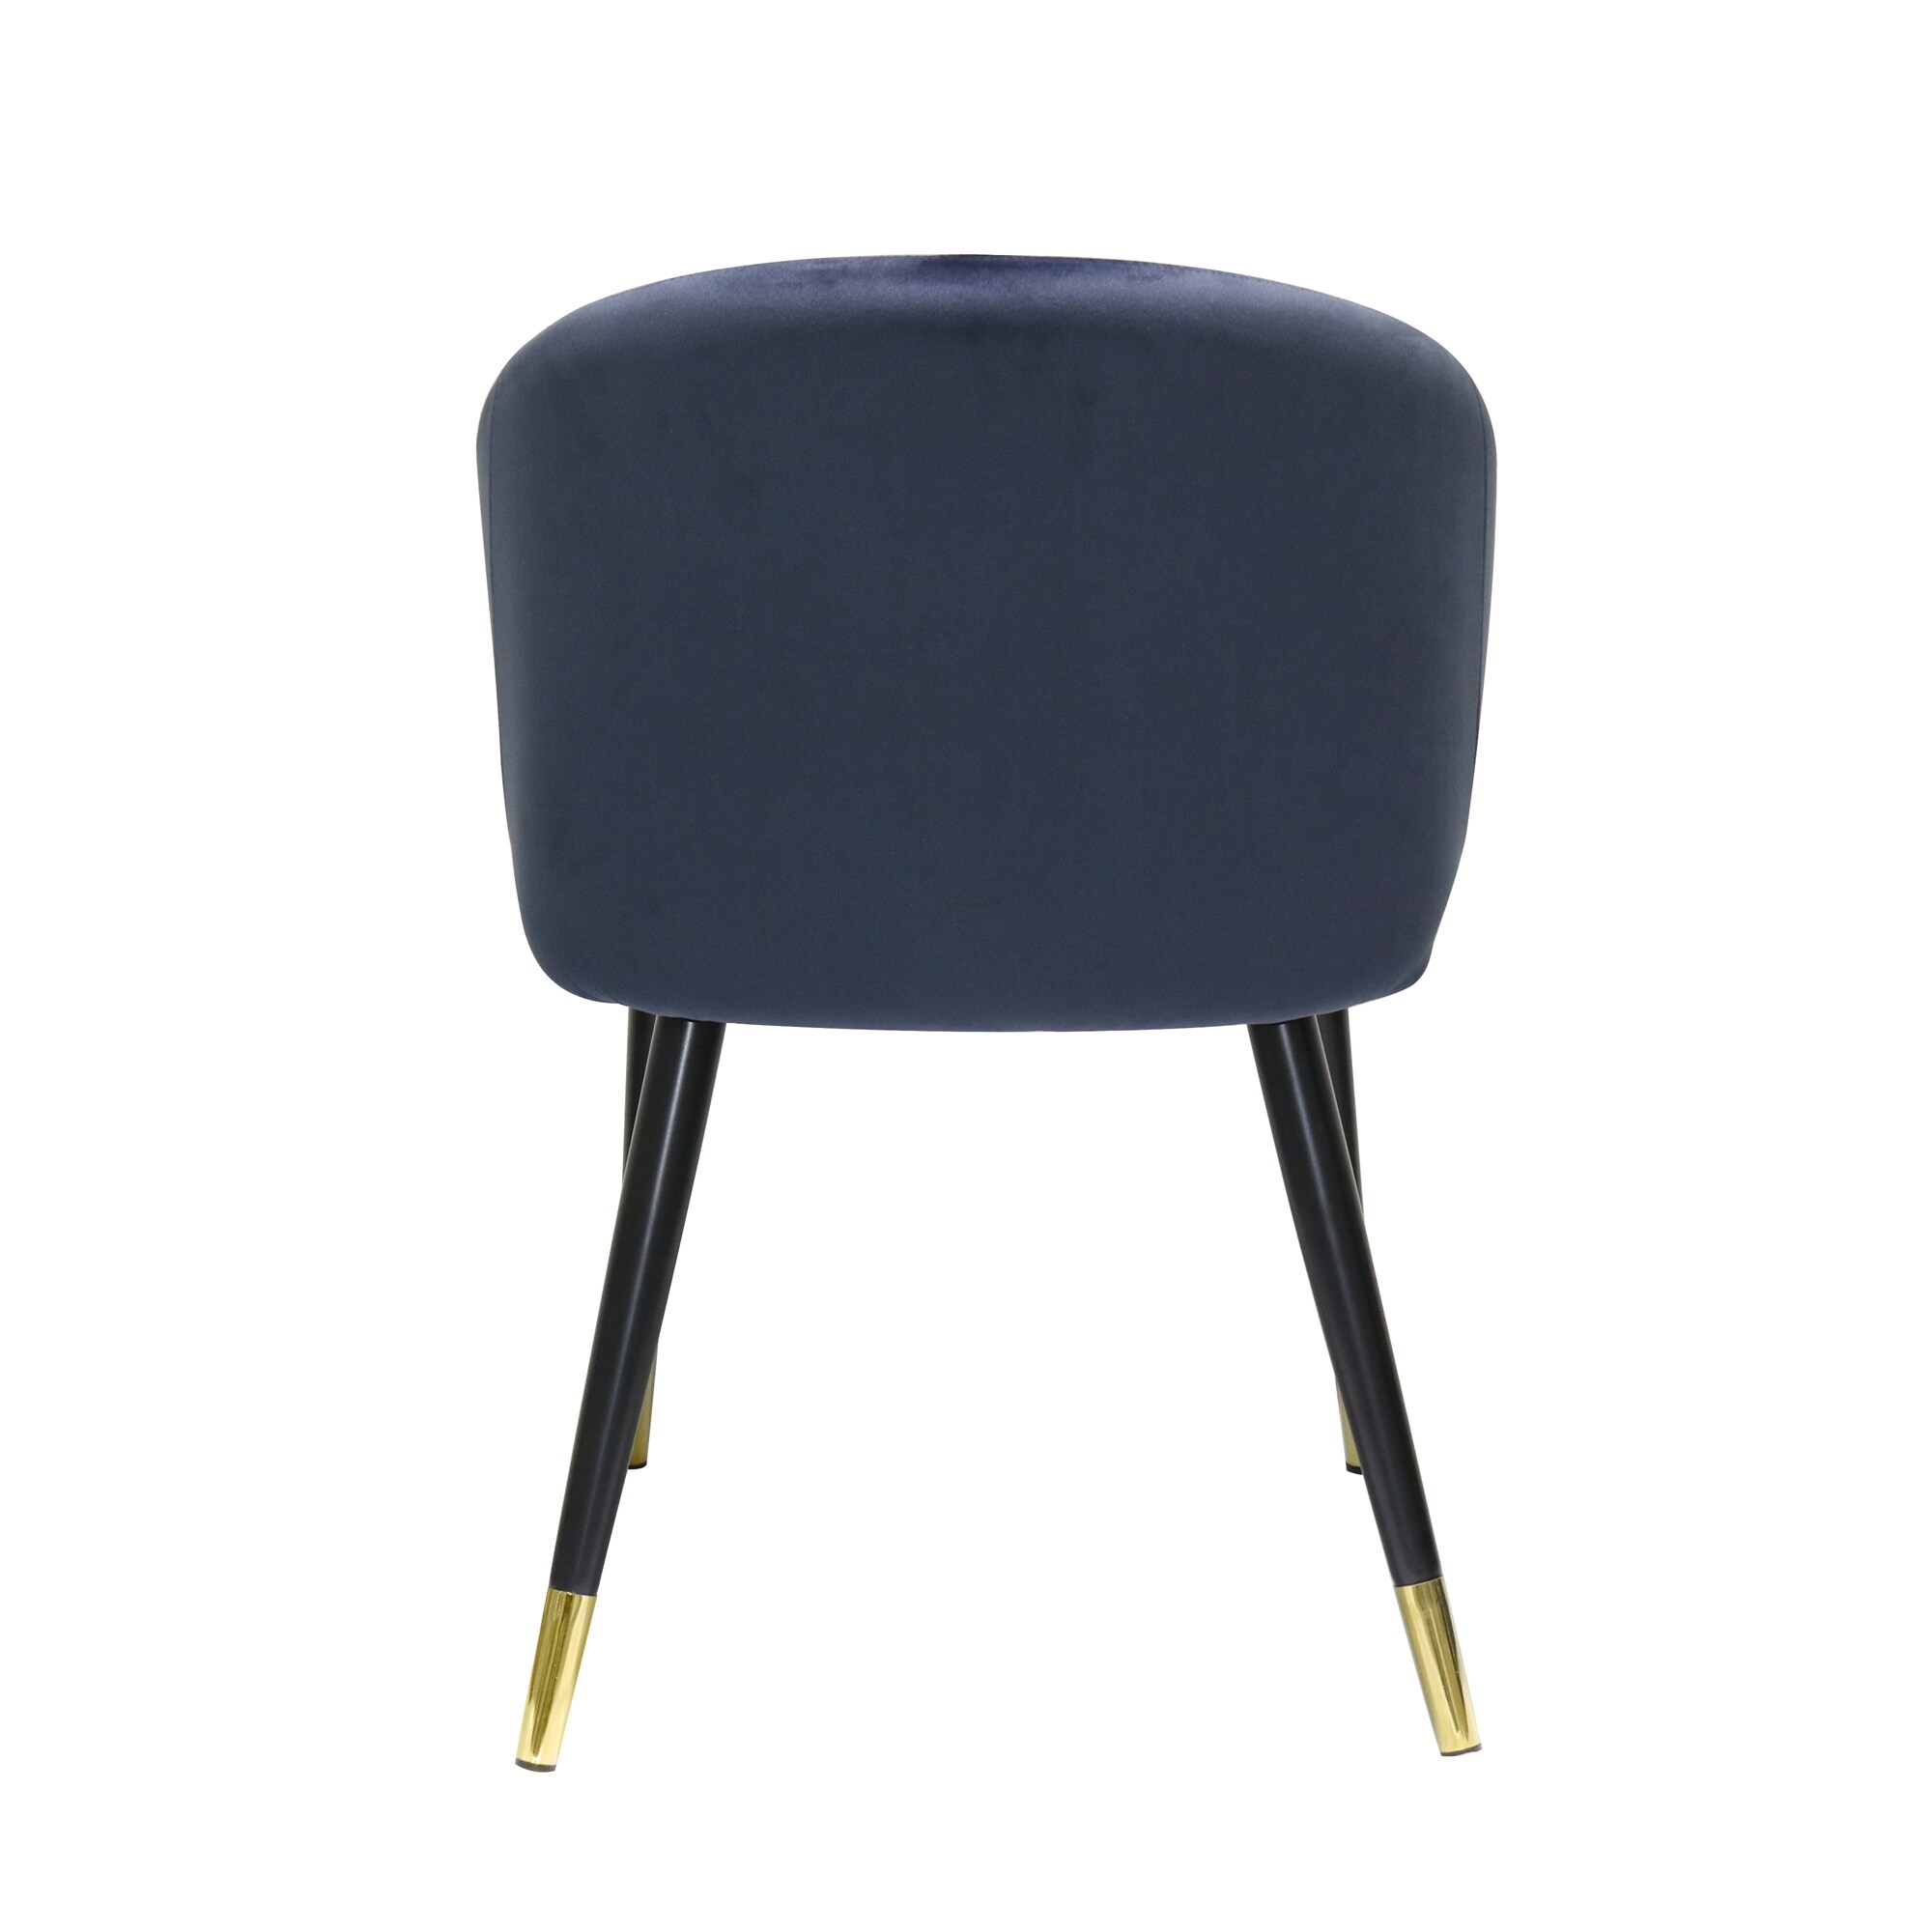 Velvet Upholstered Dining Chair Set of 2 - 22"Wx25"Dx32"H